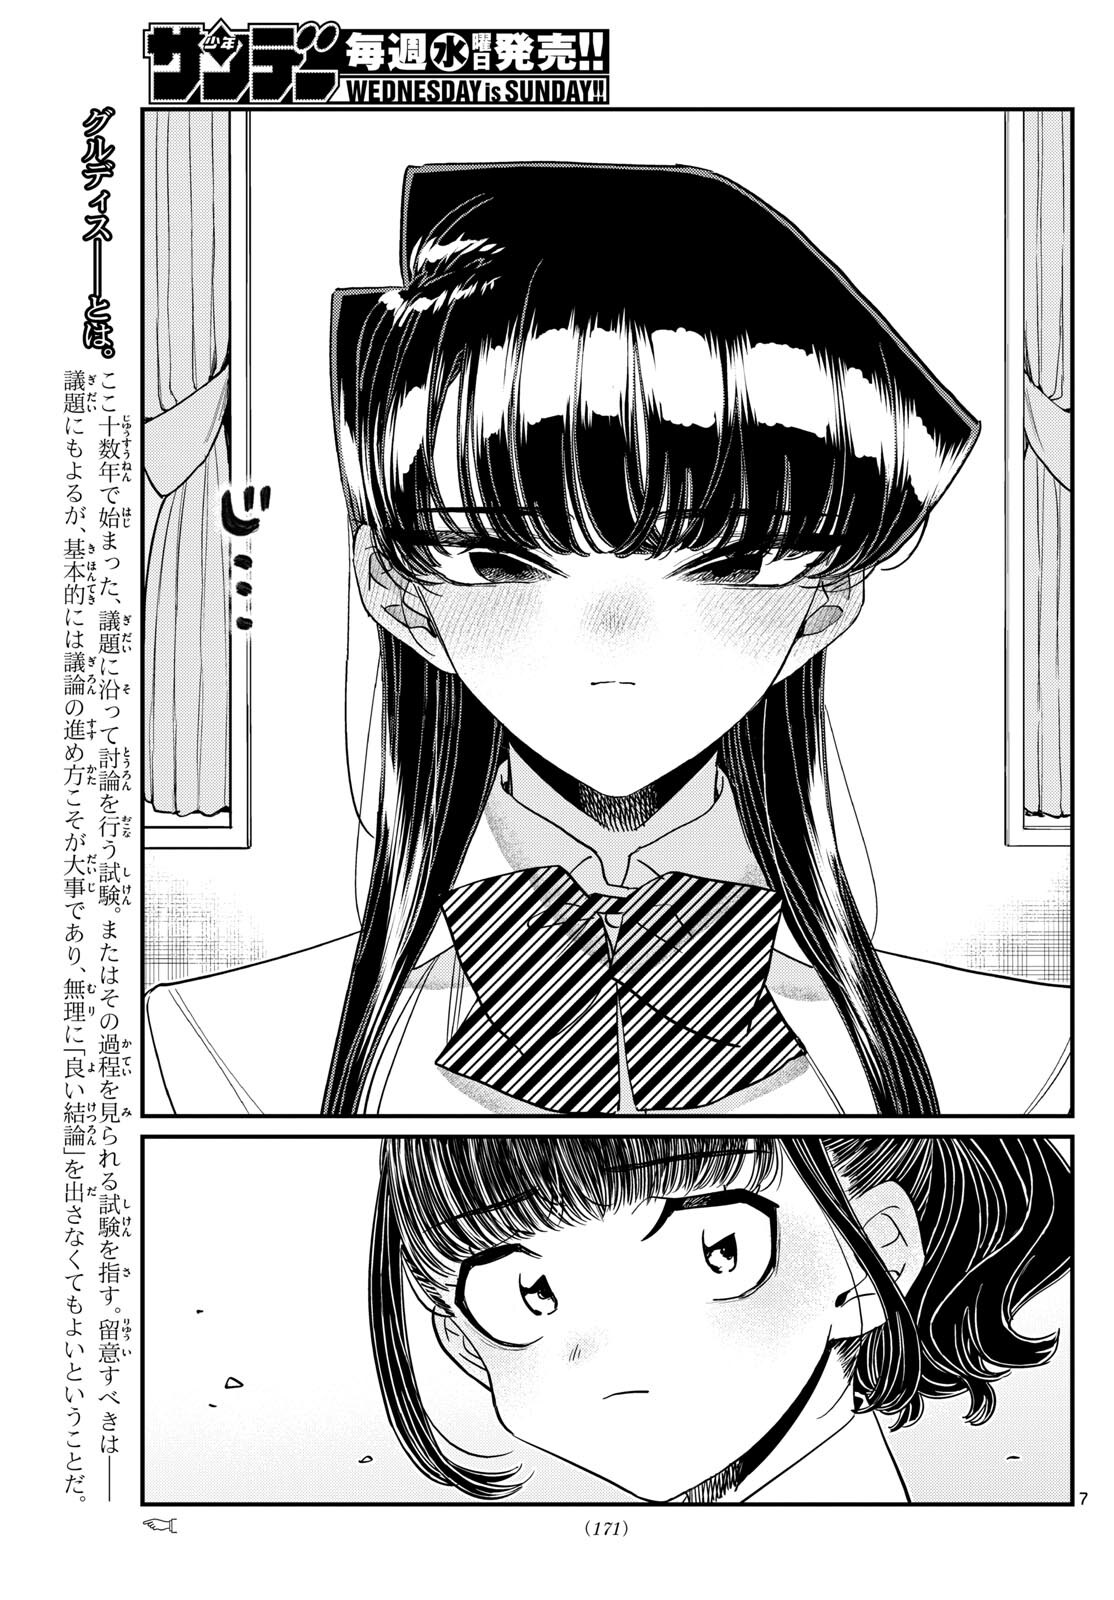 Komi-san wa Komyushou Desu - Chapter 441 - Page 7